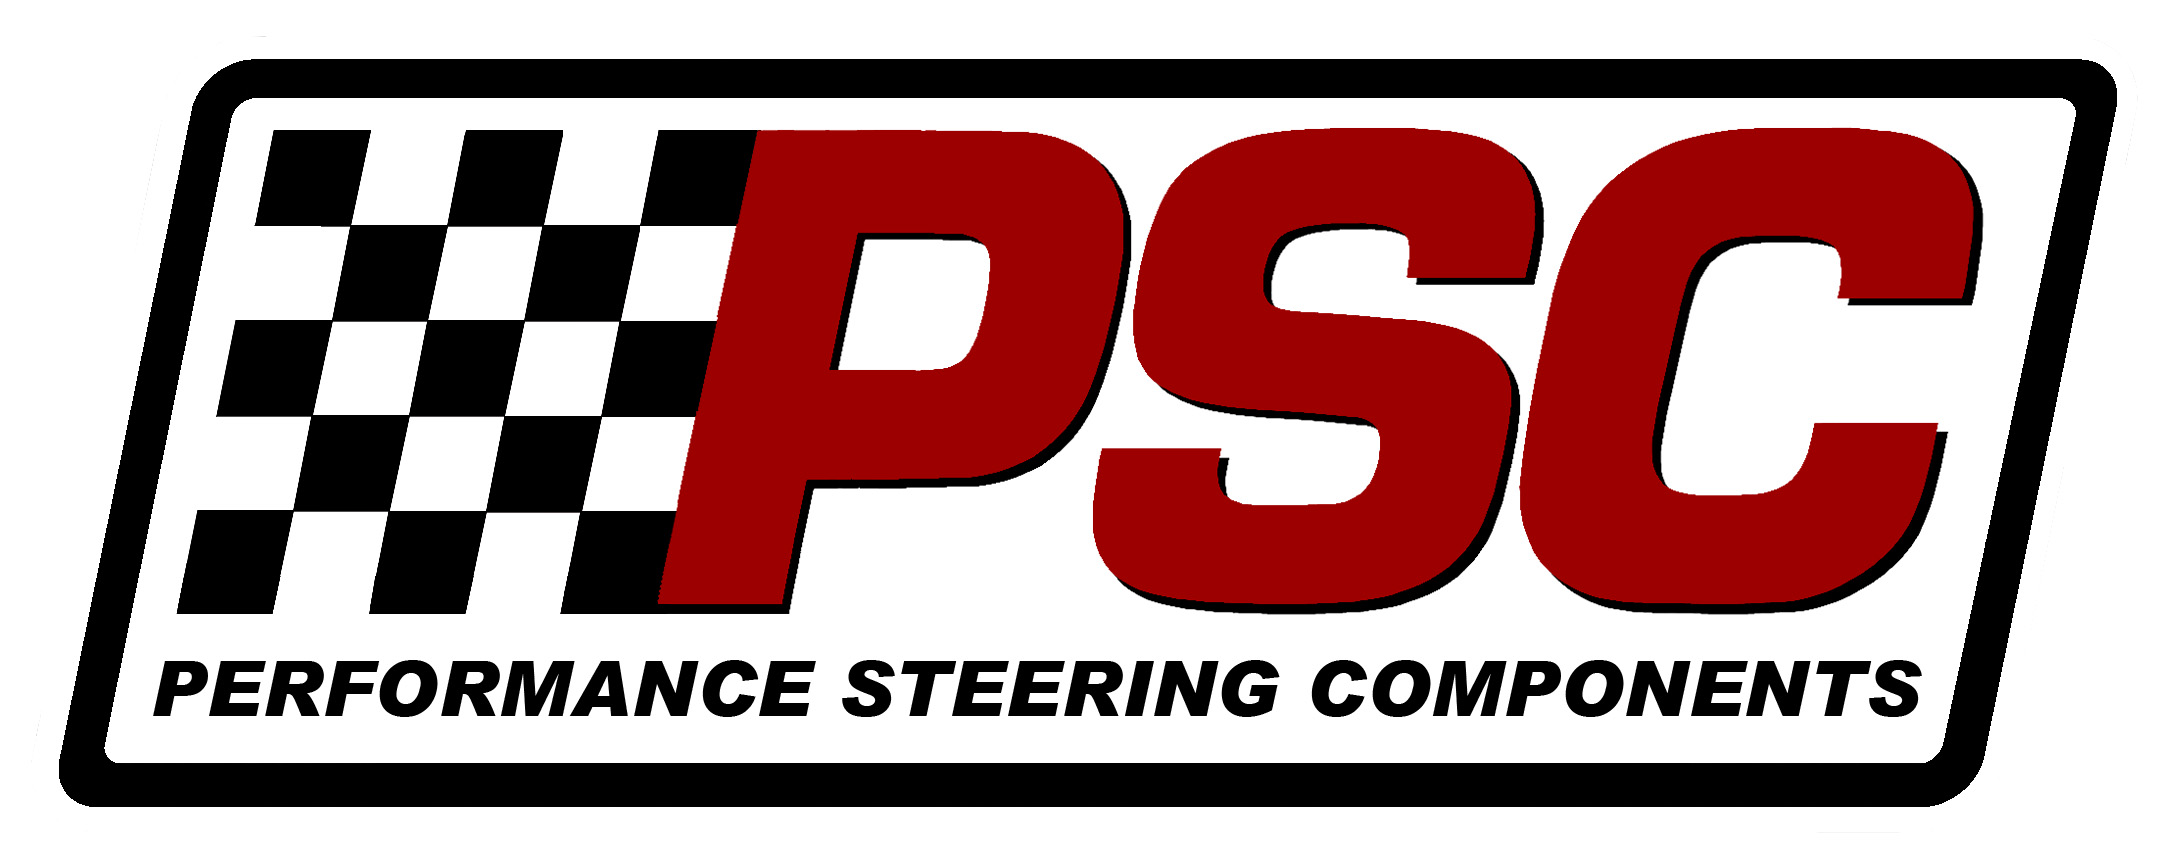 PSC-Logo-1.jpg